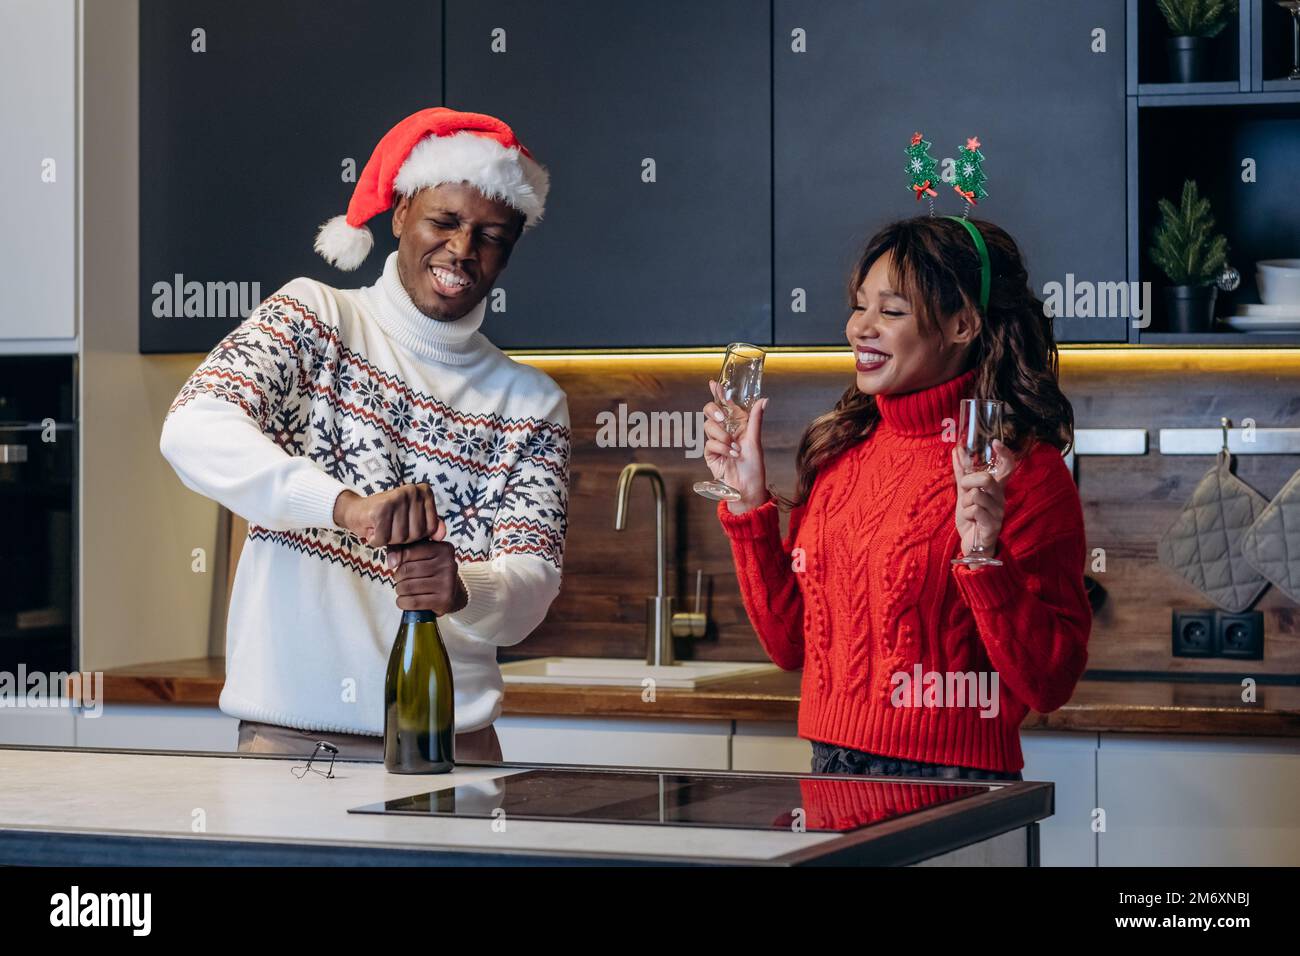 Eine junge weiße Frau und ein schwarzer Mann mit festlichen Hüten und bunten bedruckten Pullover schütten Champagner in die Weingläser, um Weihnachten zu feiern Stockfoto